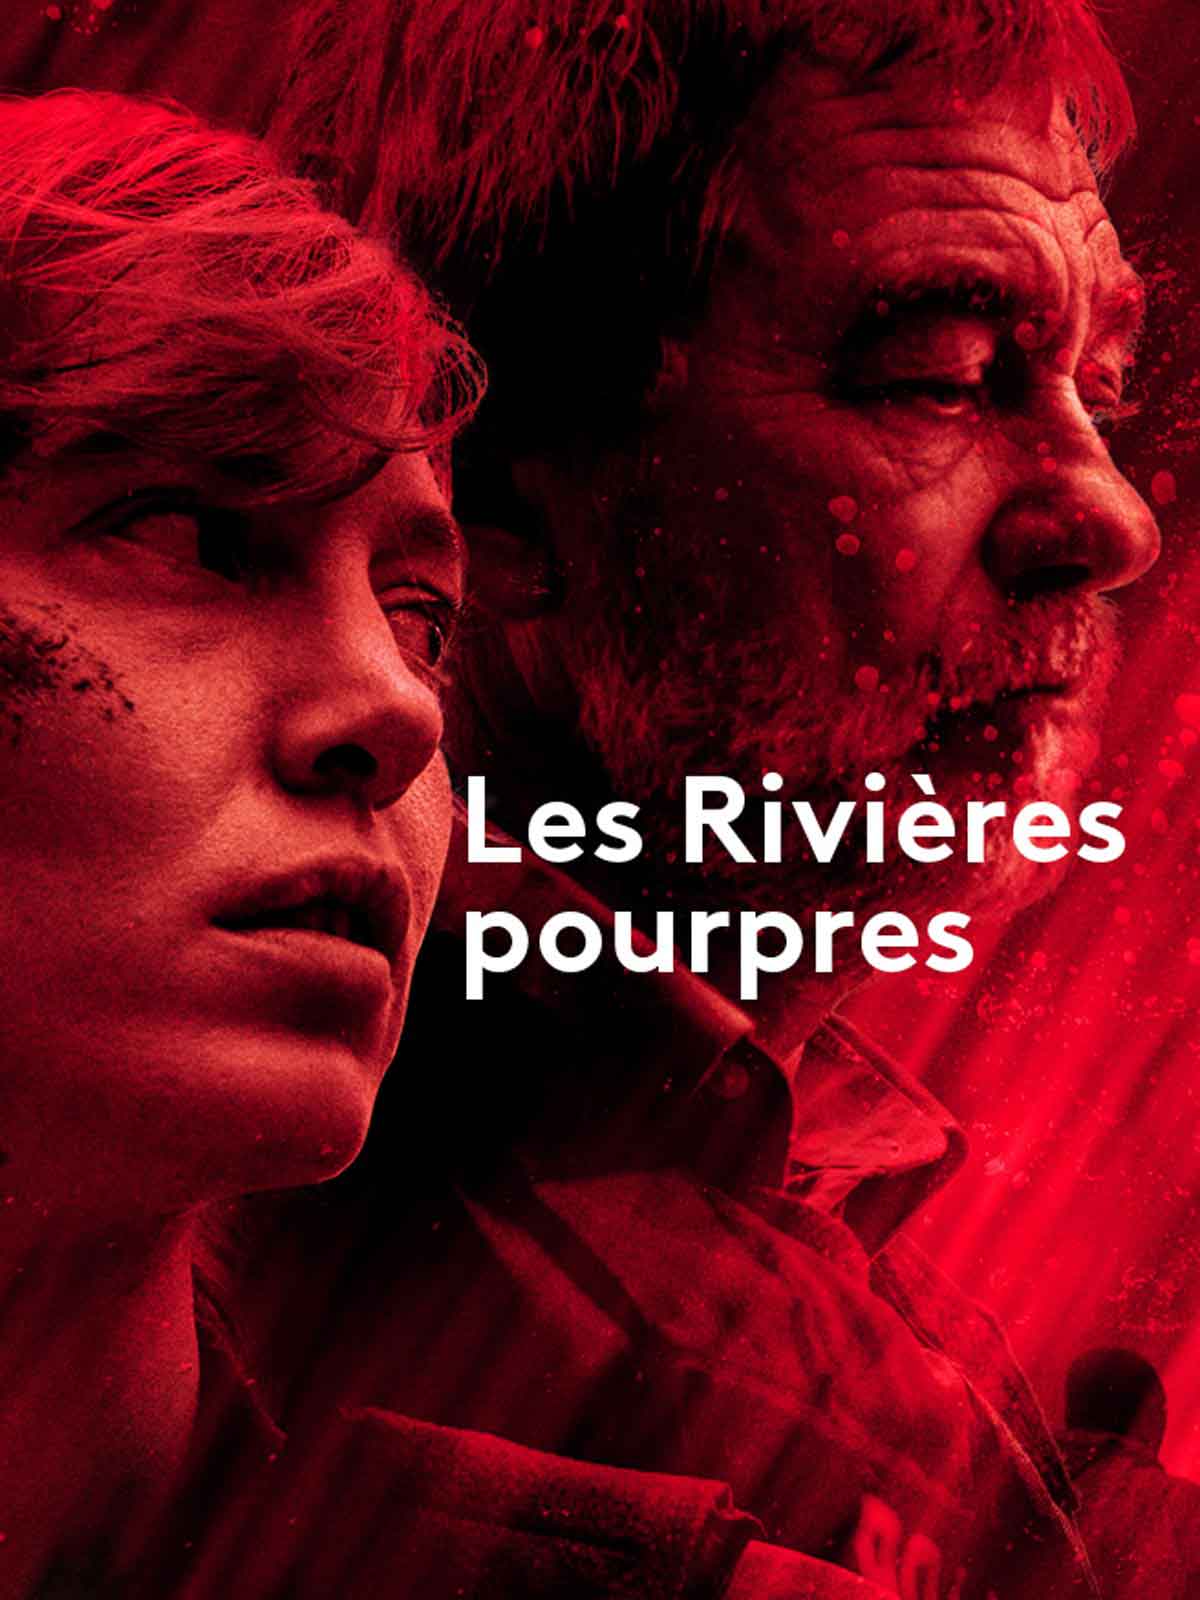 Affiche de la série Les Rivières pourpres